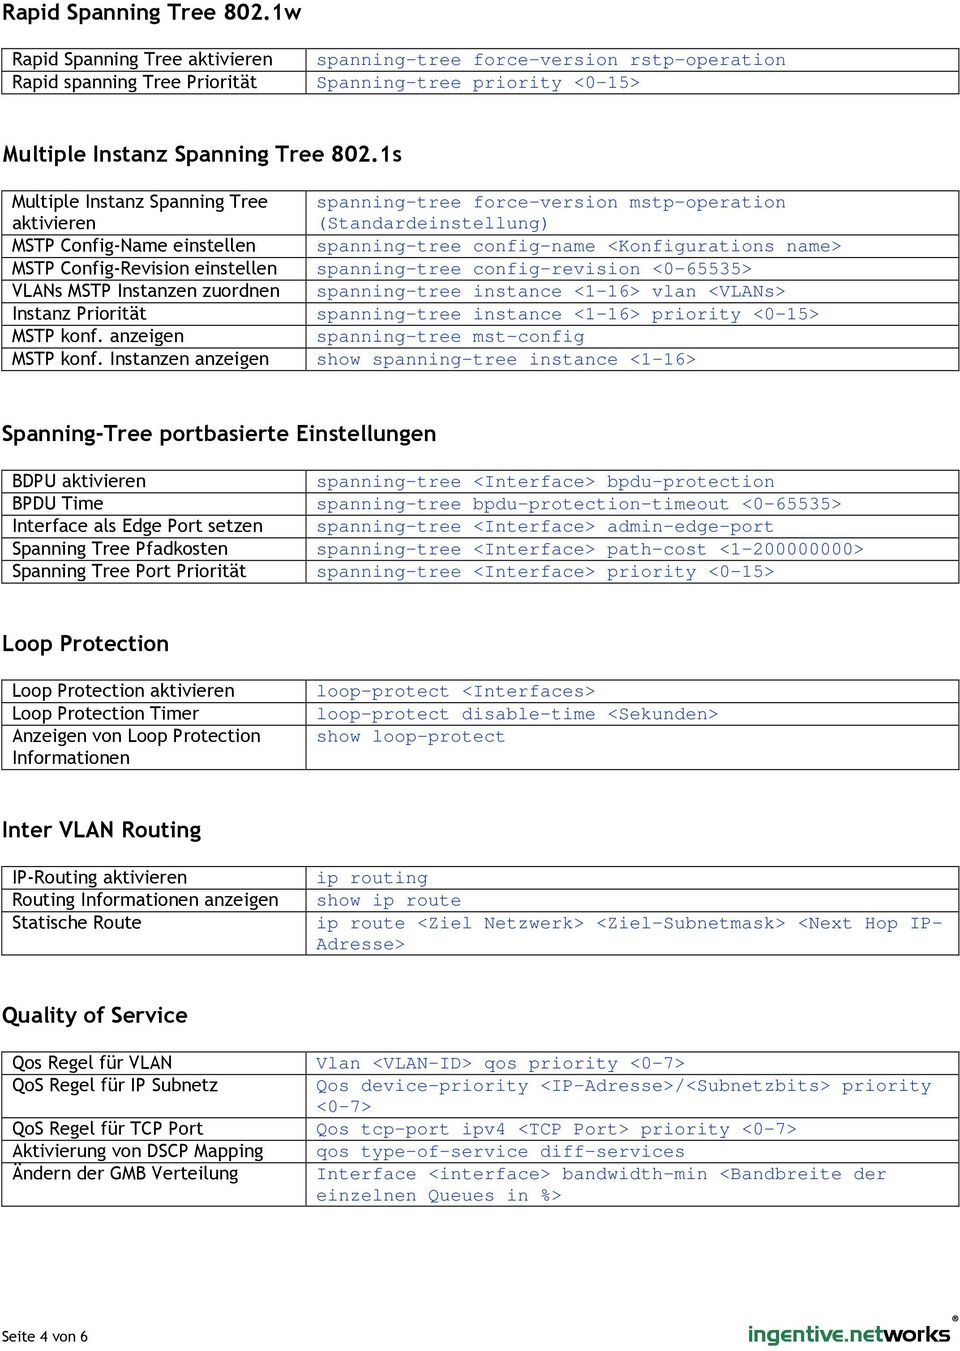 Config-Revision einstellen spanning-tree config-revision <0-65535> VLANs MSTP Instanzen zuordnen spanning-tree instance <1-16> vlan <VLANs> Instanz Priorität spanning-tree instance <1-16> priority